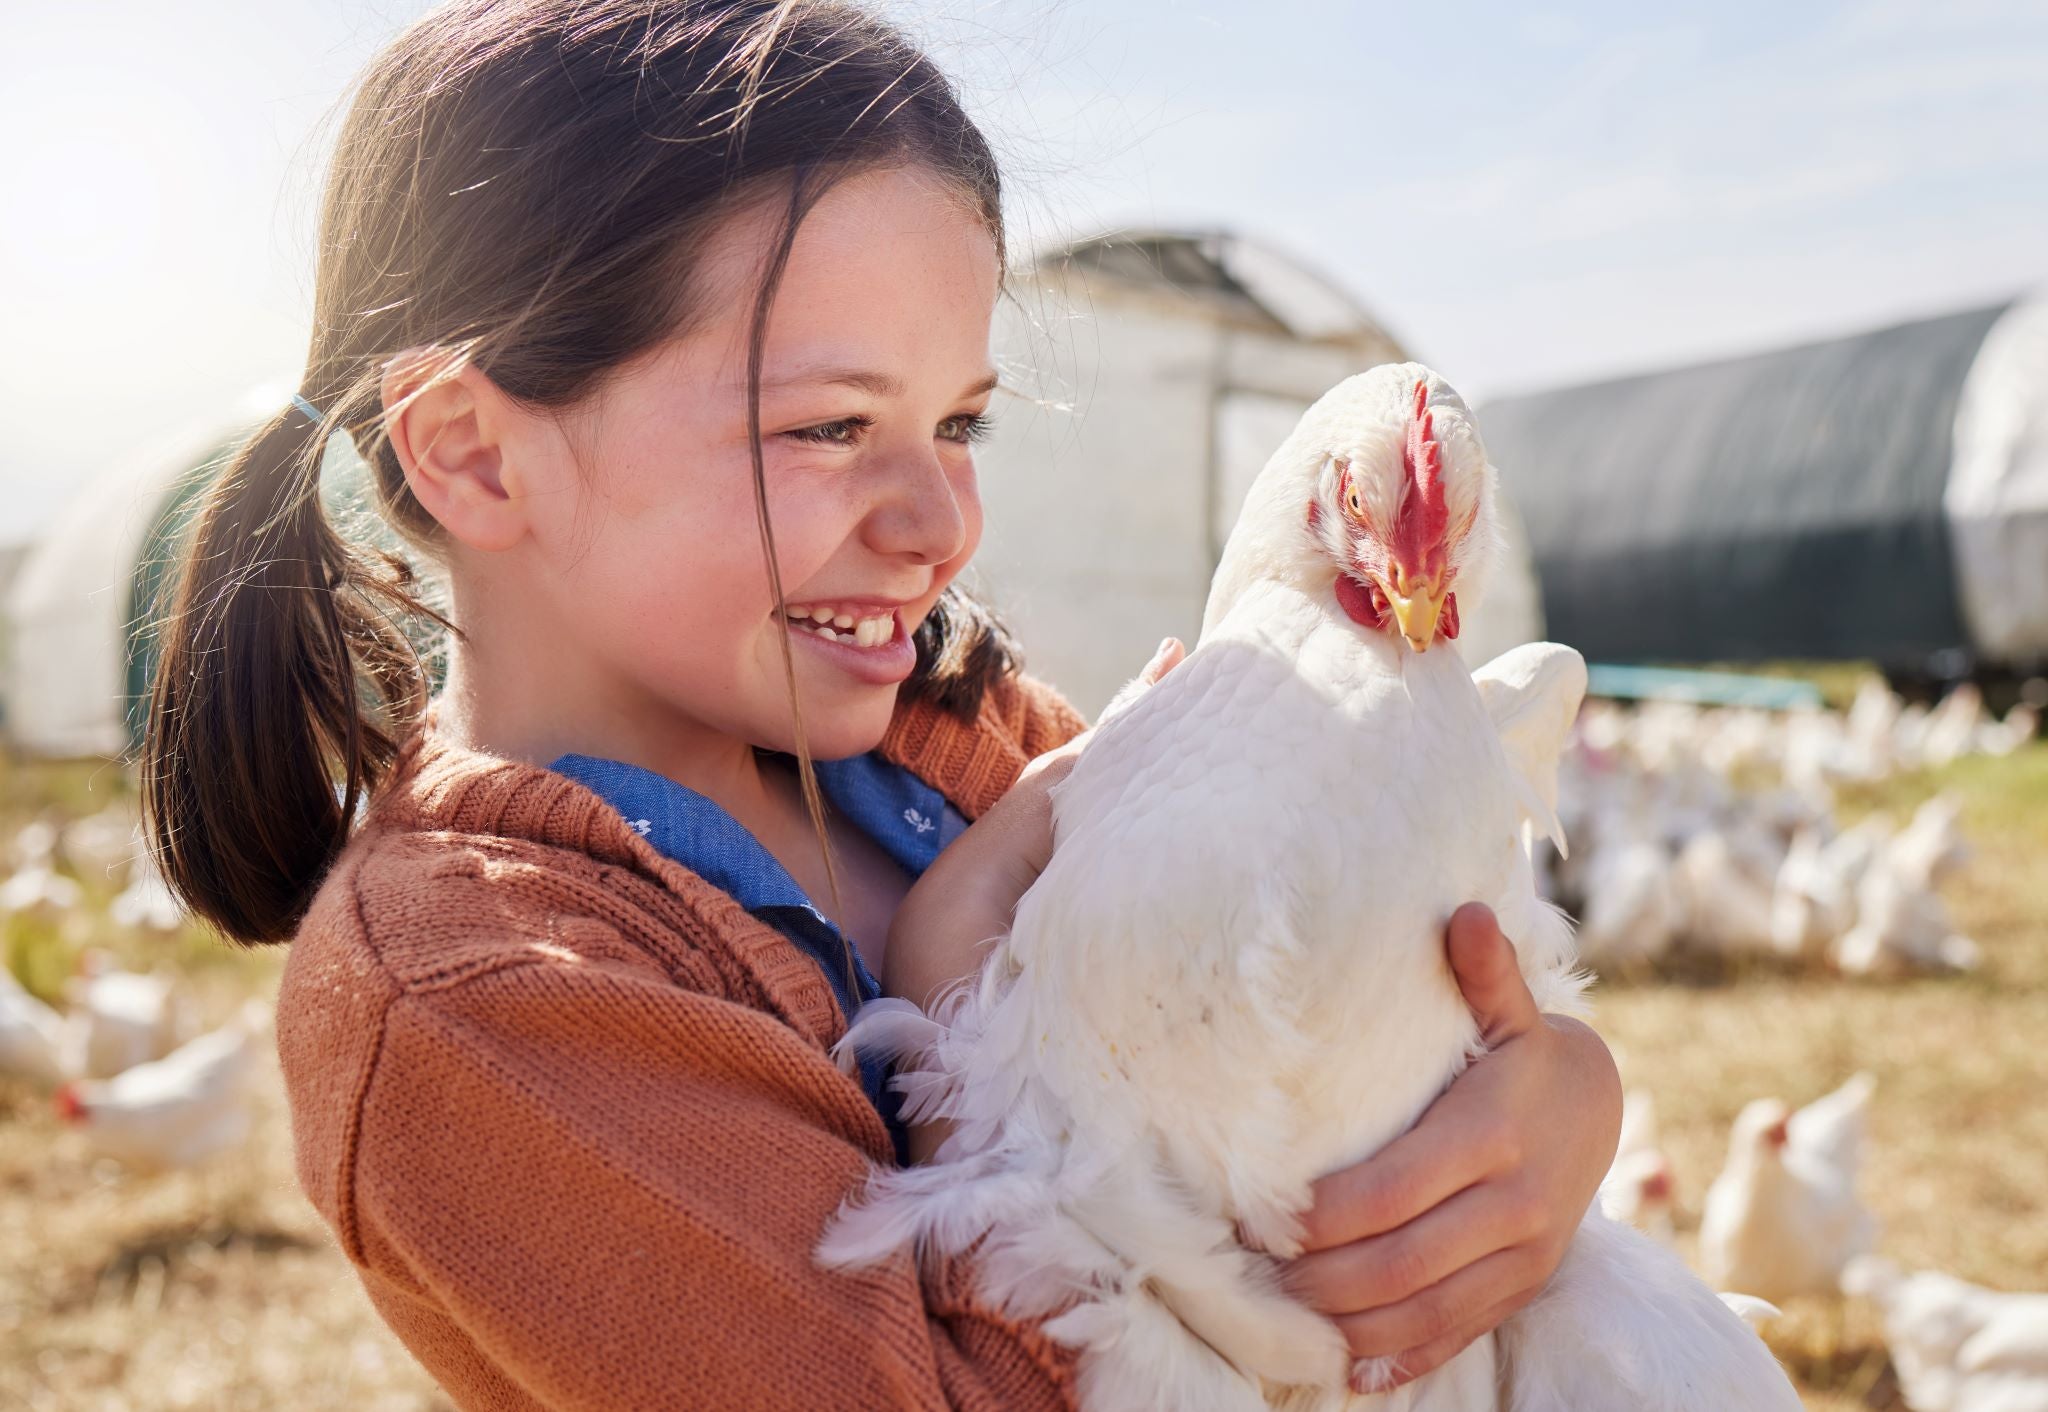 8 cosas que los criadores de gallinas adoran de la puerta automática -  Omlet Blog España